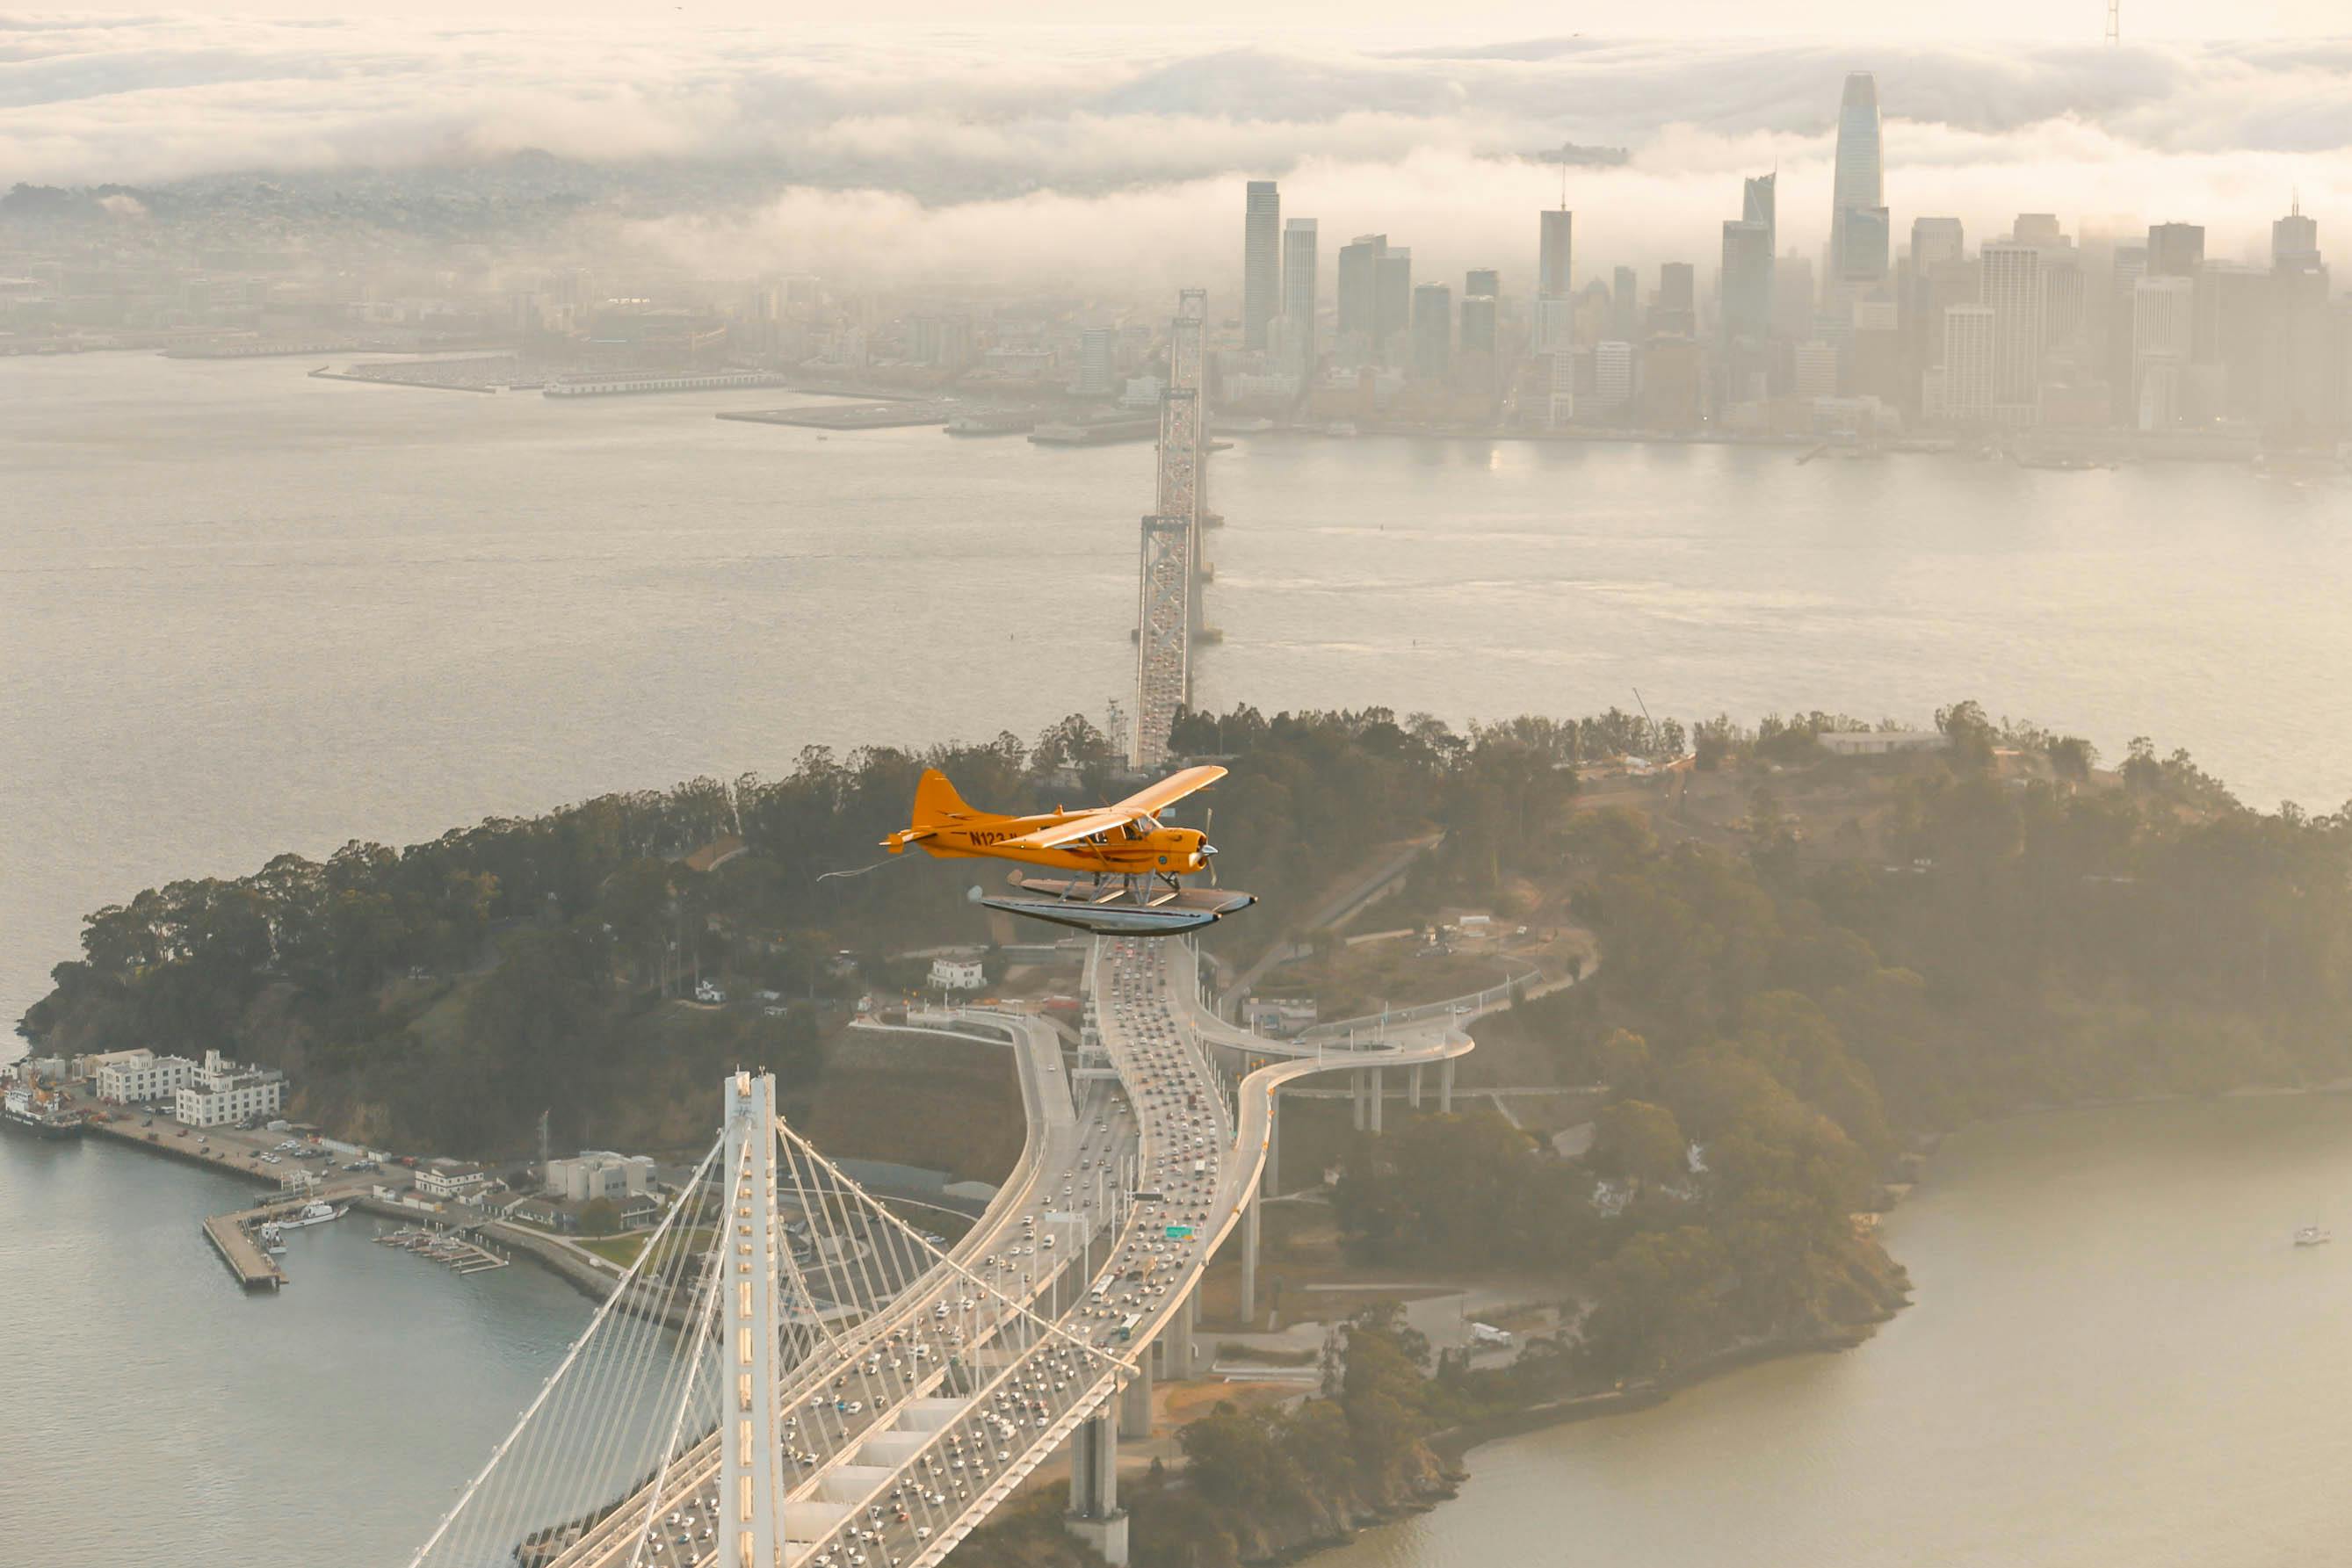 Stadtrundfahrt mit dem Wasserflugzeug in San Francisco